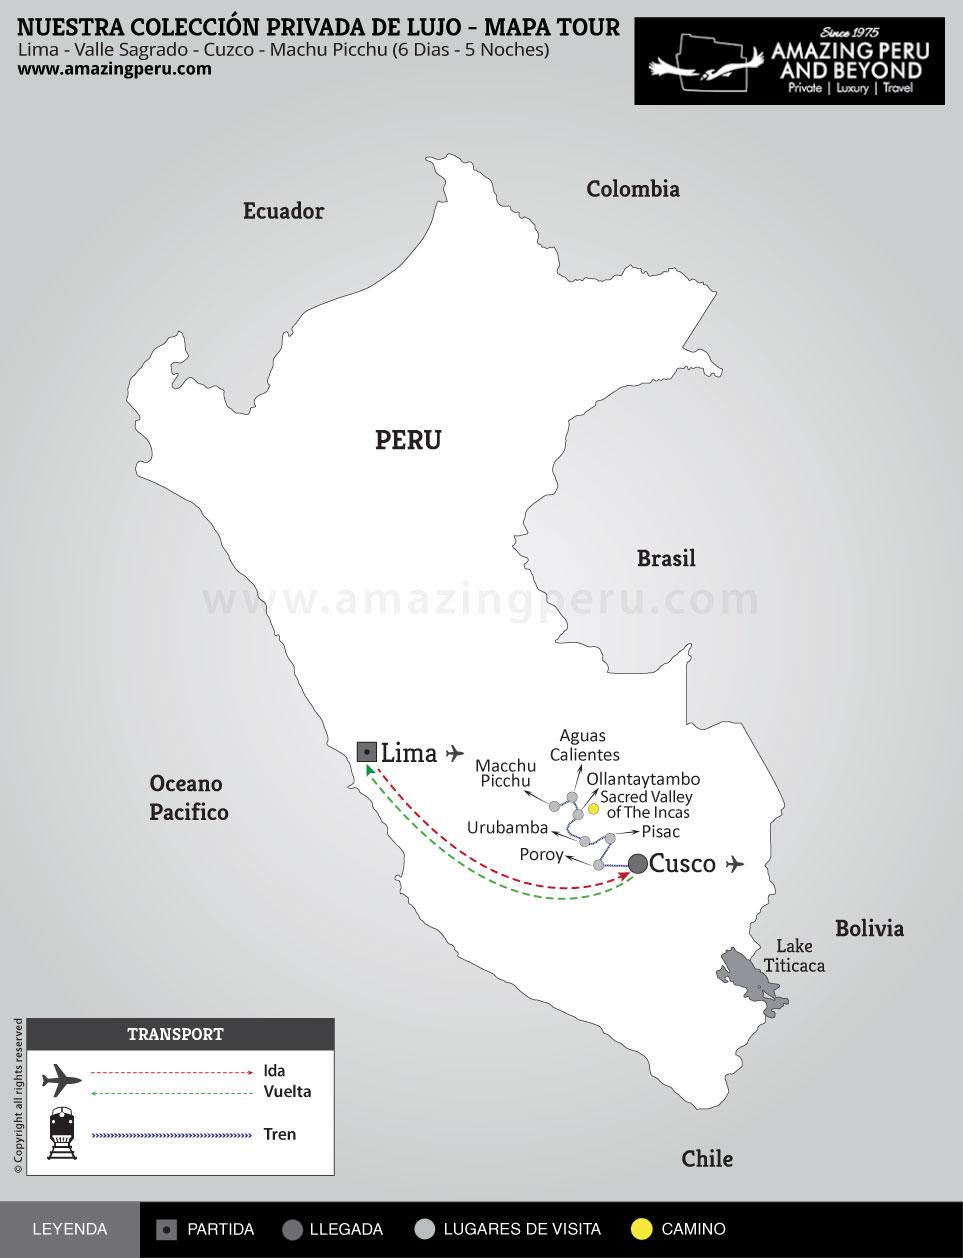 Nuestra Coleccin Privada de Lujo - Tour Exclusivamente proveido por Amazing Peru - Estilo: Ultra Lujo VIP Escapate a Machu Picchu